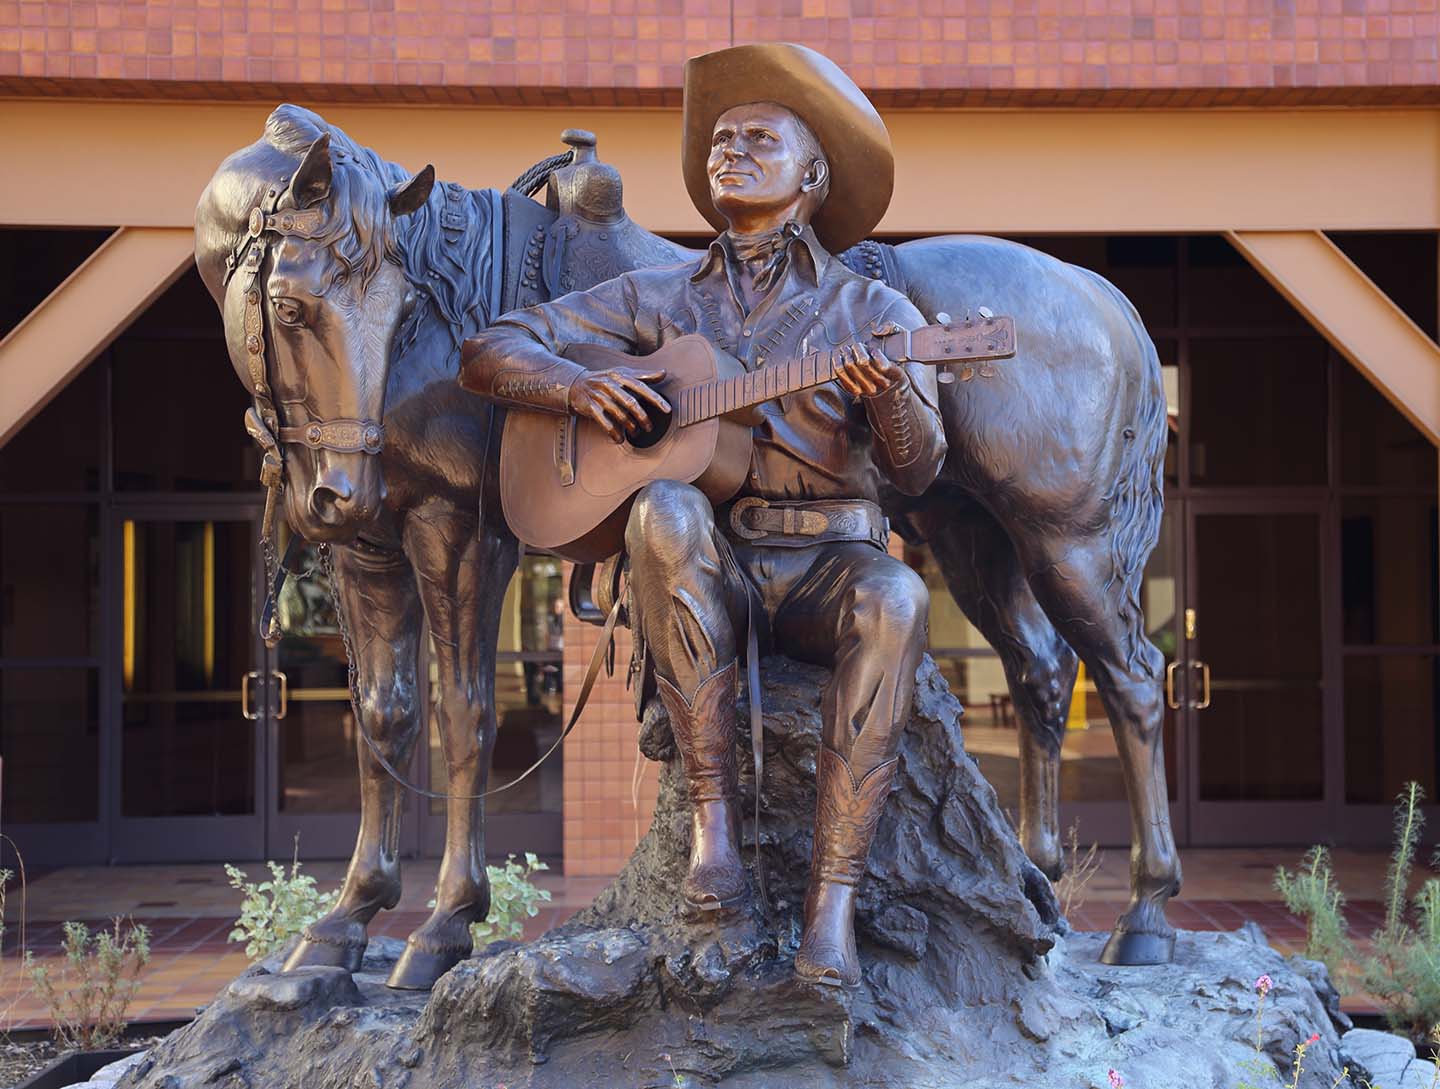 Bức tượng của danh ca Gene Autry cùng chú ngựa Champion của ông được trưng bày tại Bảo tàng Autry của miền Tây Mỹ quốc ở Los Angeles, California. Bức tượng được điêu khắc bởi nghệ thuật gia David Spellerberg và được đặt tên là “Back in the Saddle” (Trở Về trên Yên Ngựa Lần Nữa). (Ảnh: Kilmer Media/Shutterstock)